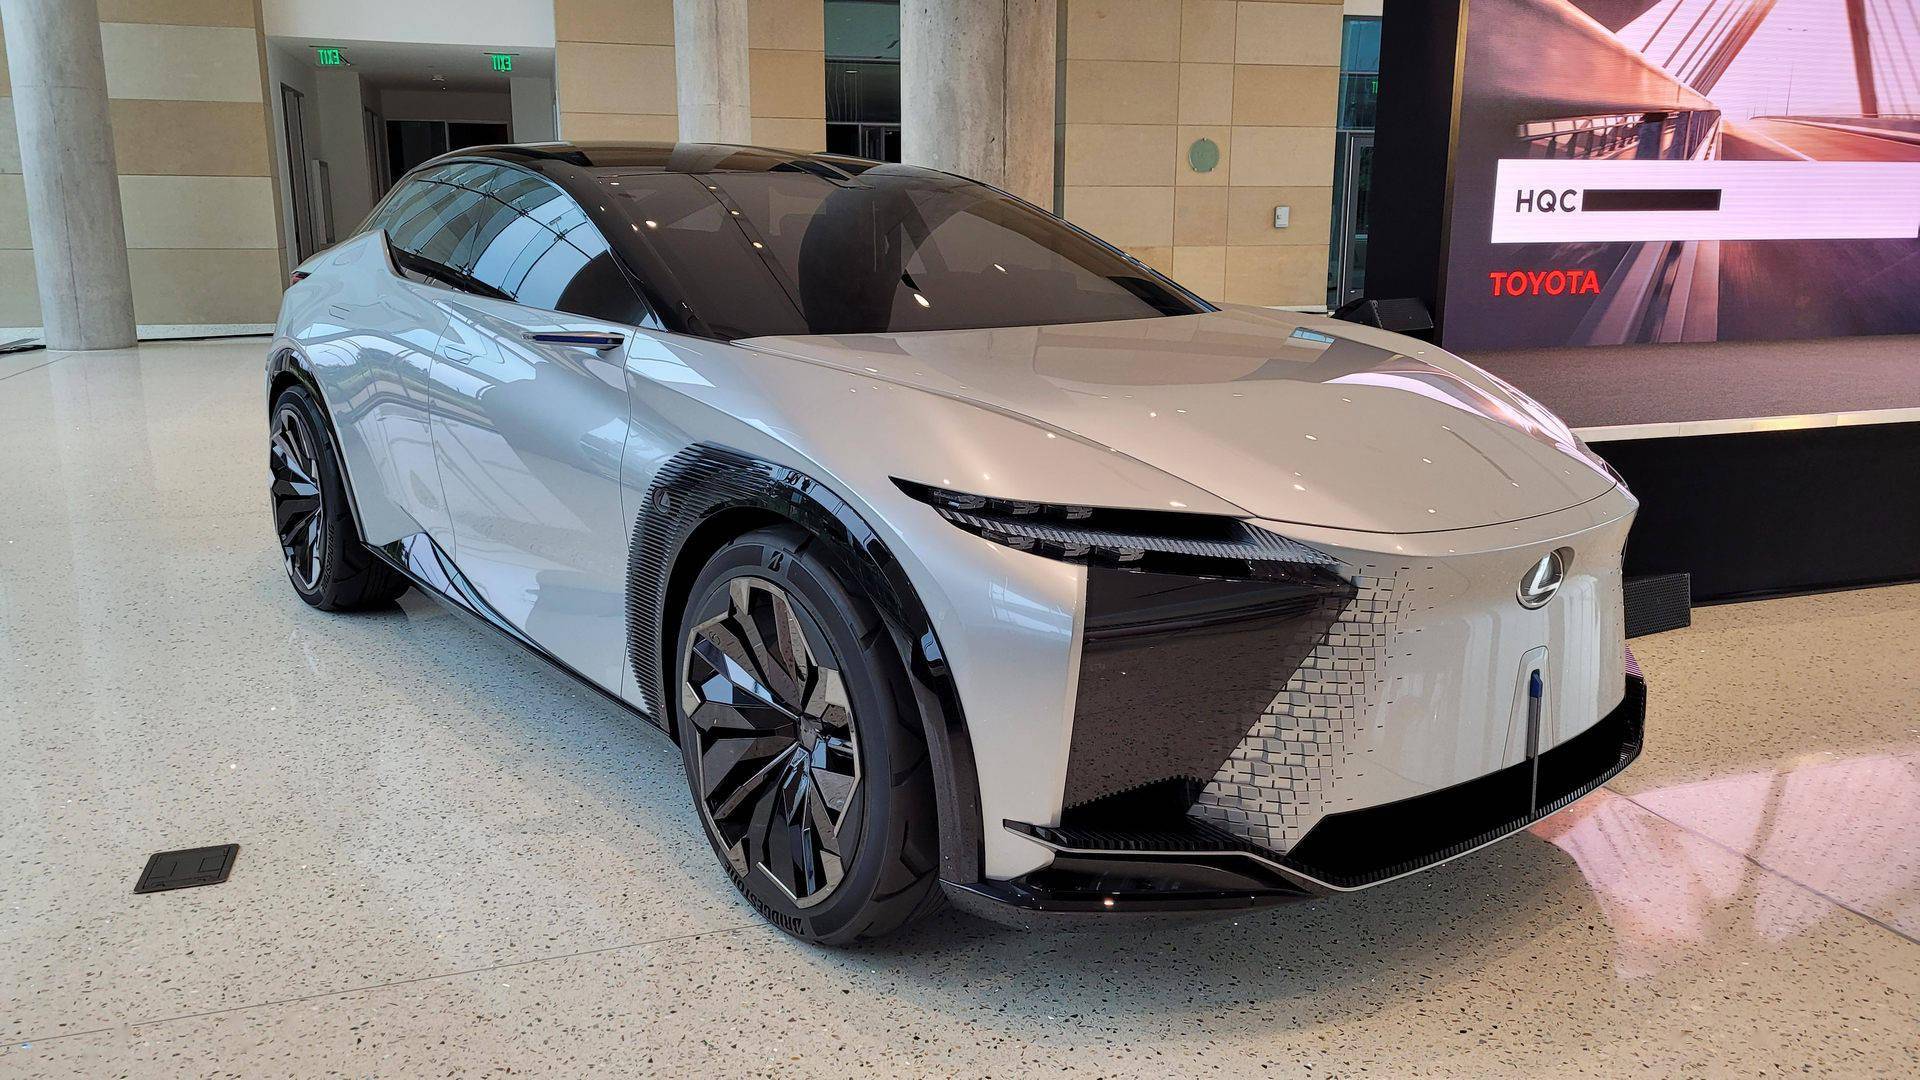 即将推出的雷克萨斯电动汽车车型将专注于性能和驱动动力学